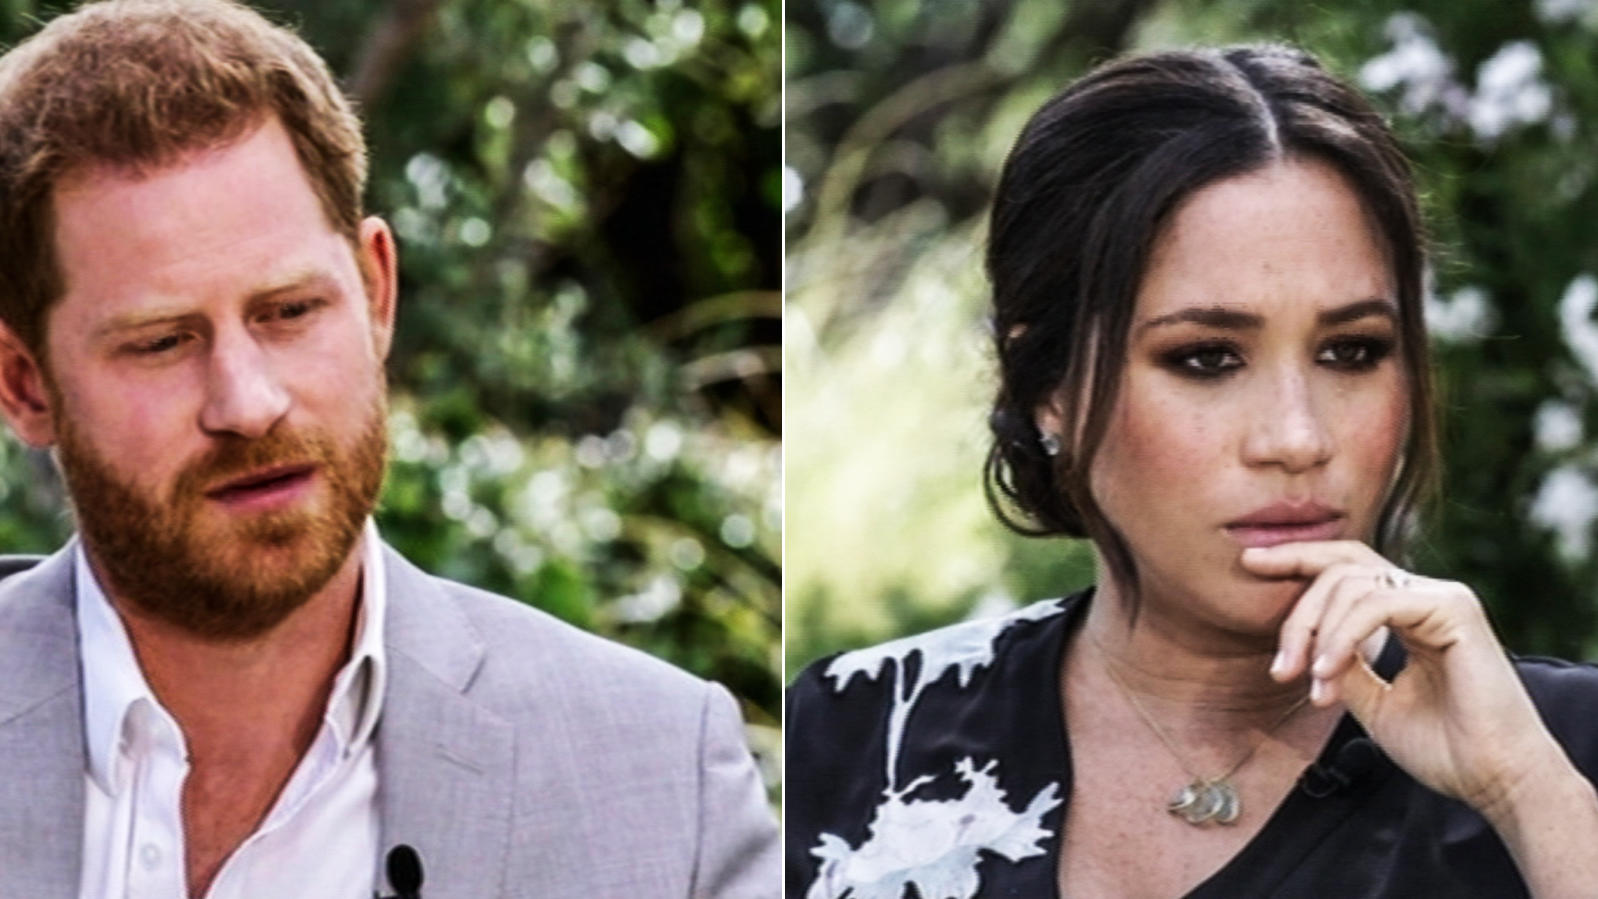 Heftige Neuigkeiten für Prinz Harry und Meghan: Eine Umfrage, die nach dem Interview gegenüber Oprah Winfrey durchgeführt wurde, hat ergeben, dass das Ehepaar so unbeliebt ist, wie noch nie zuvor.